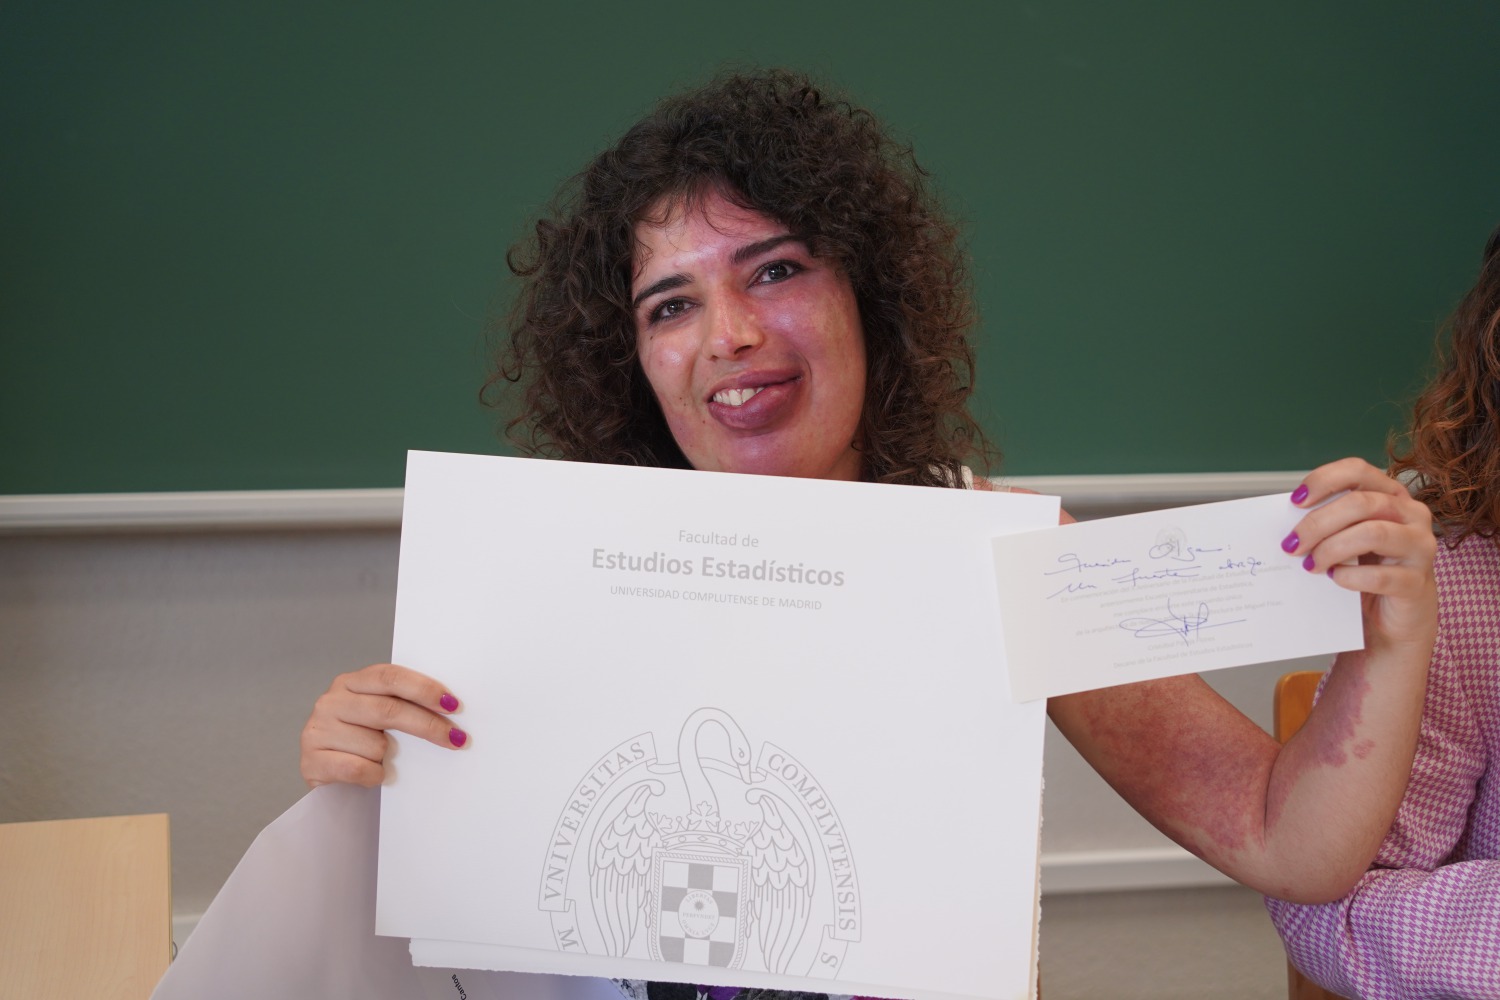 Olga Cantos, alumna de AFANIAS, recibiendo un obsequio de la Universidad Complutense